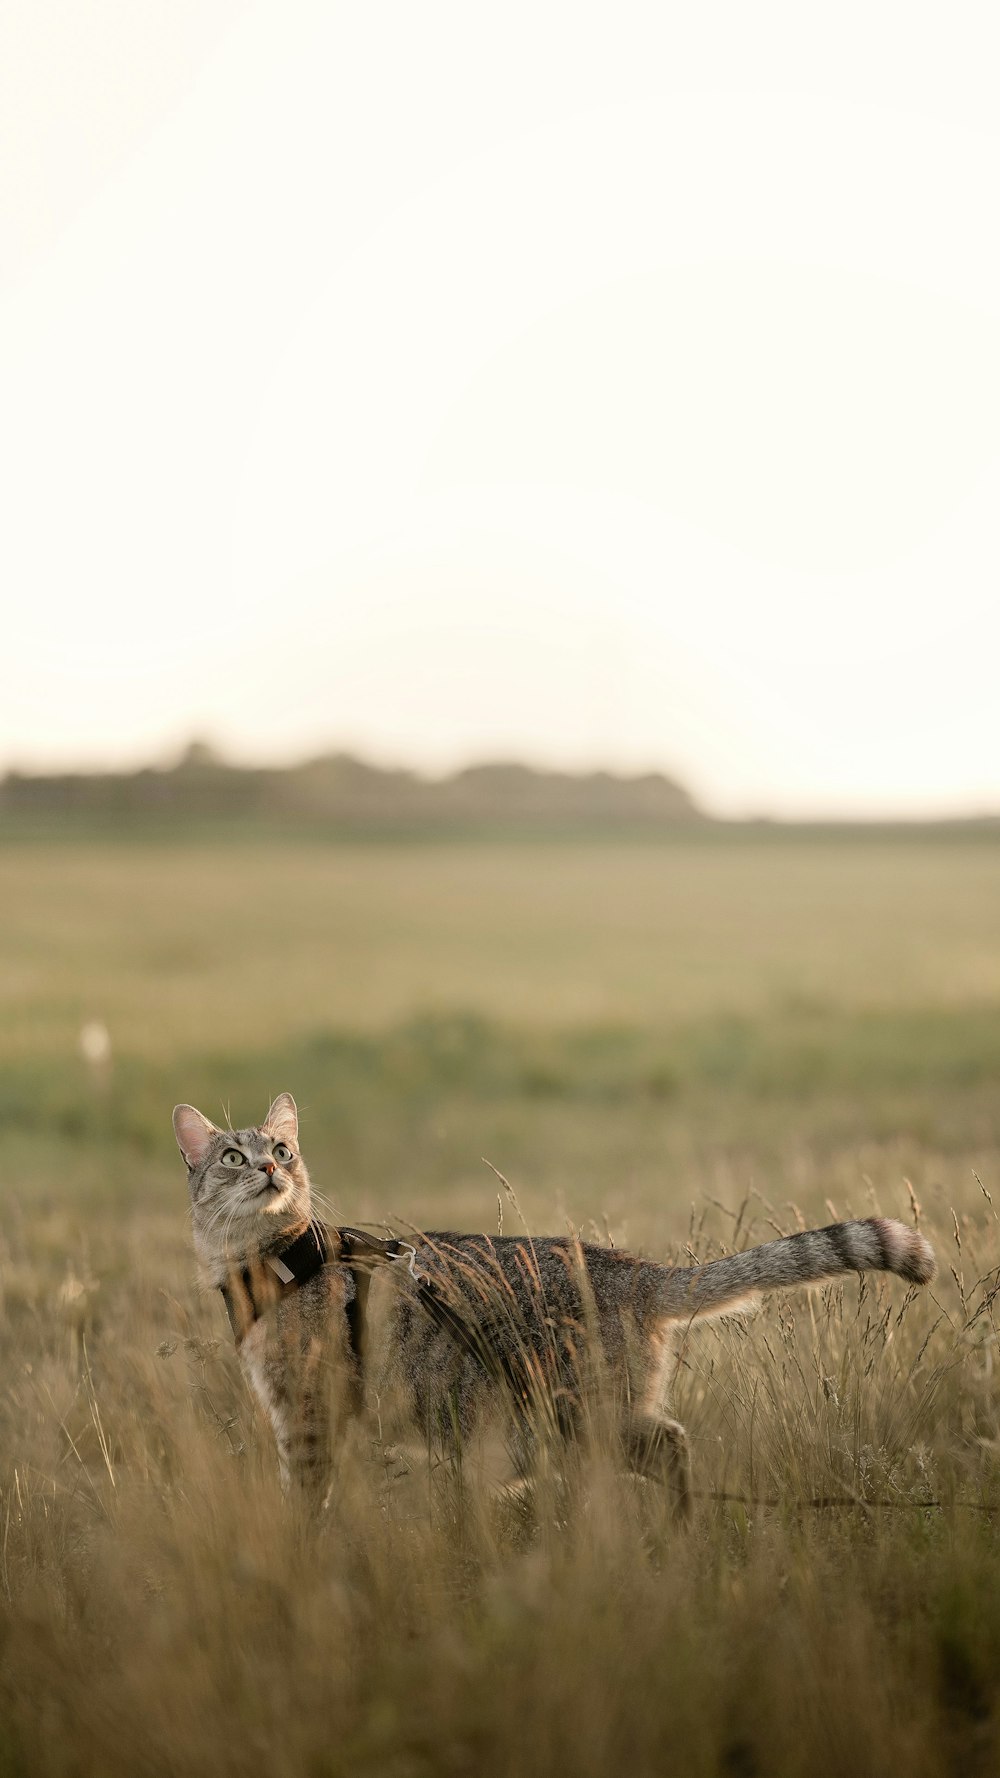 a cat walking through a field of tall grass